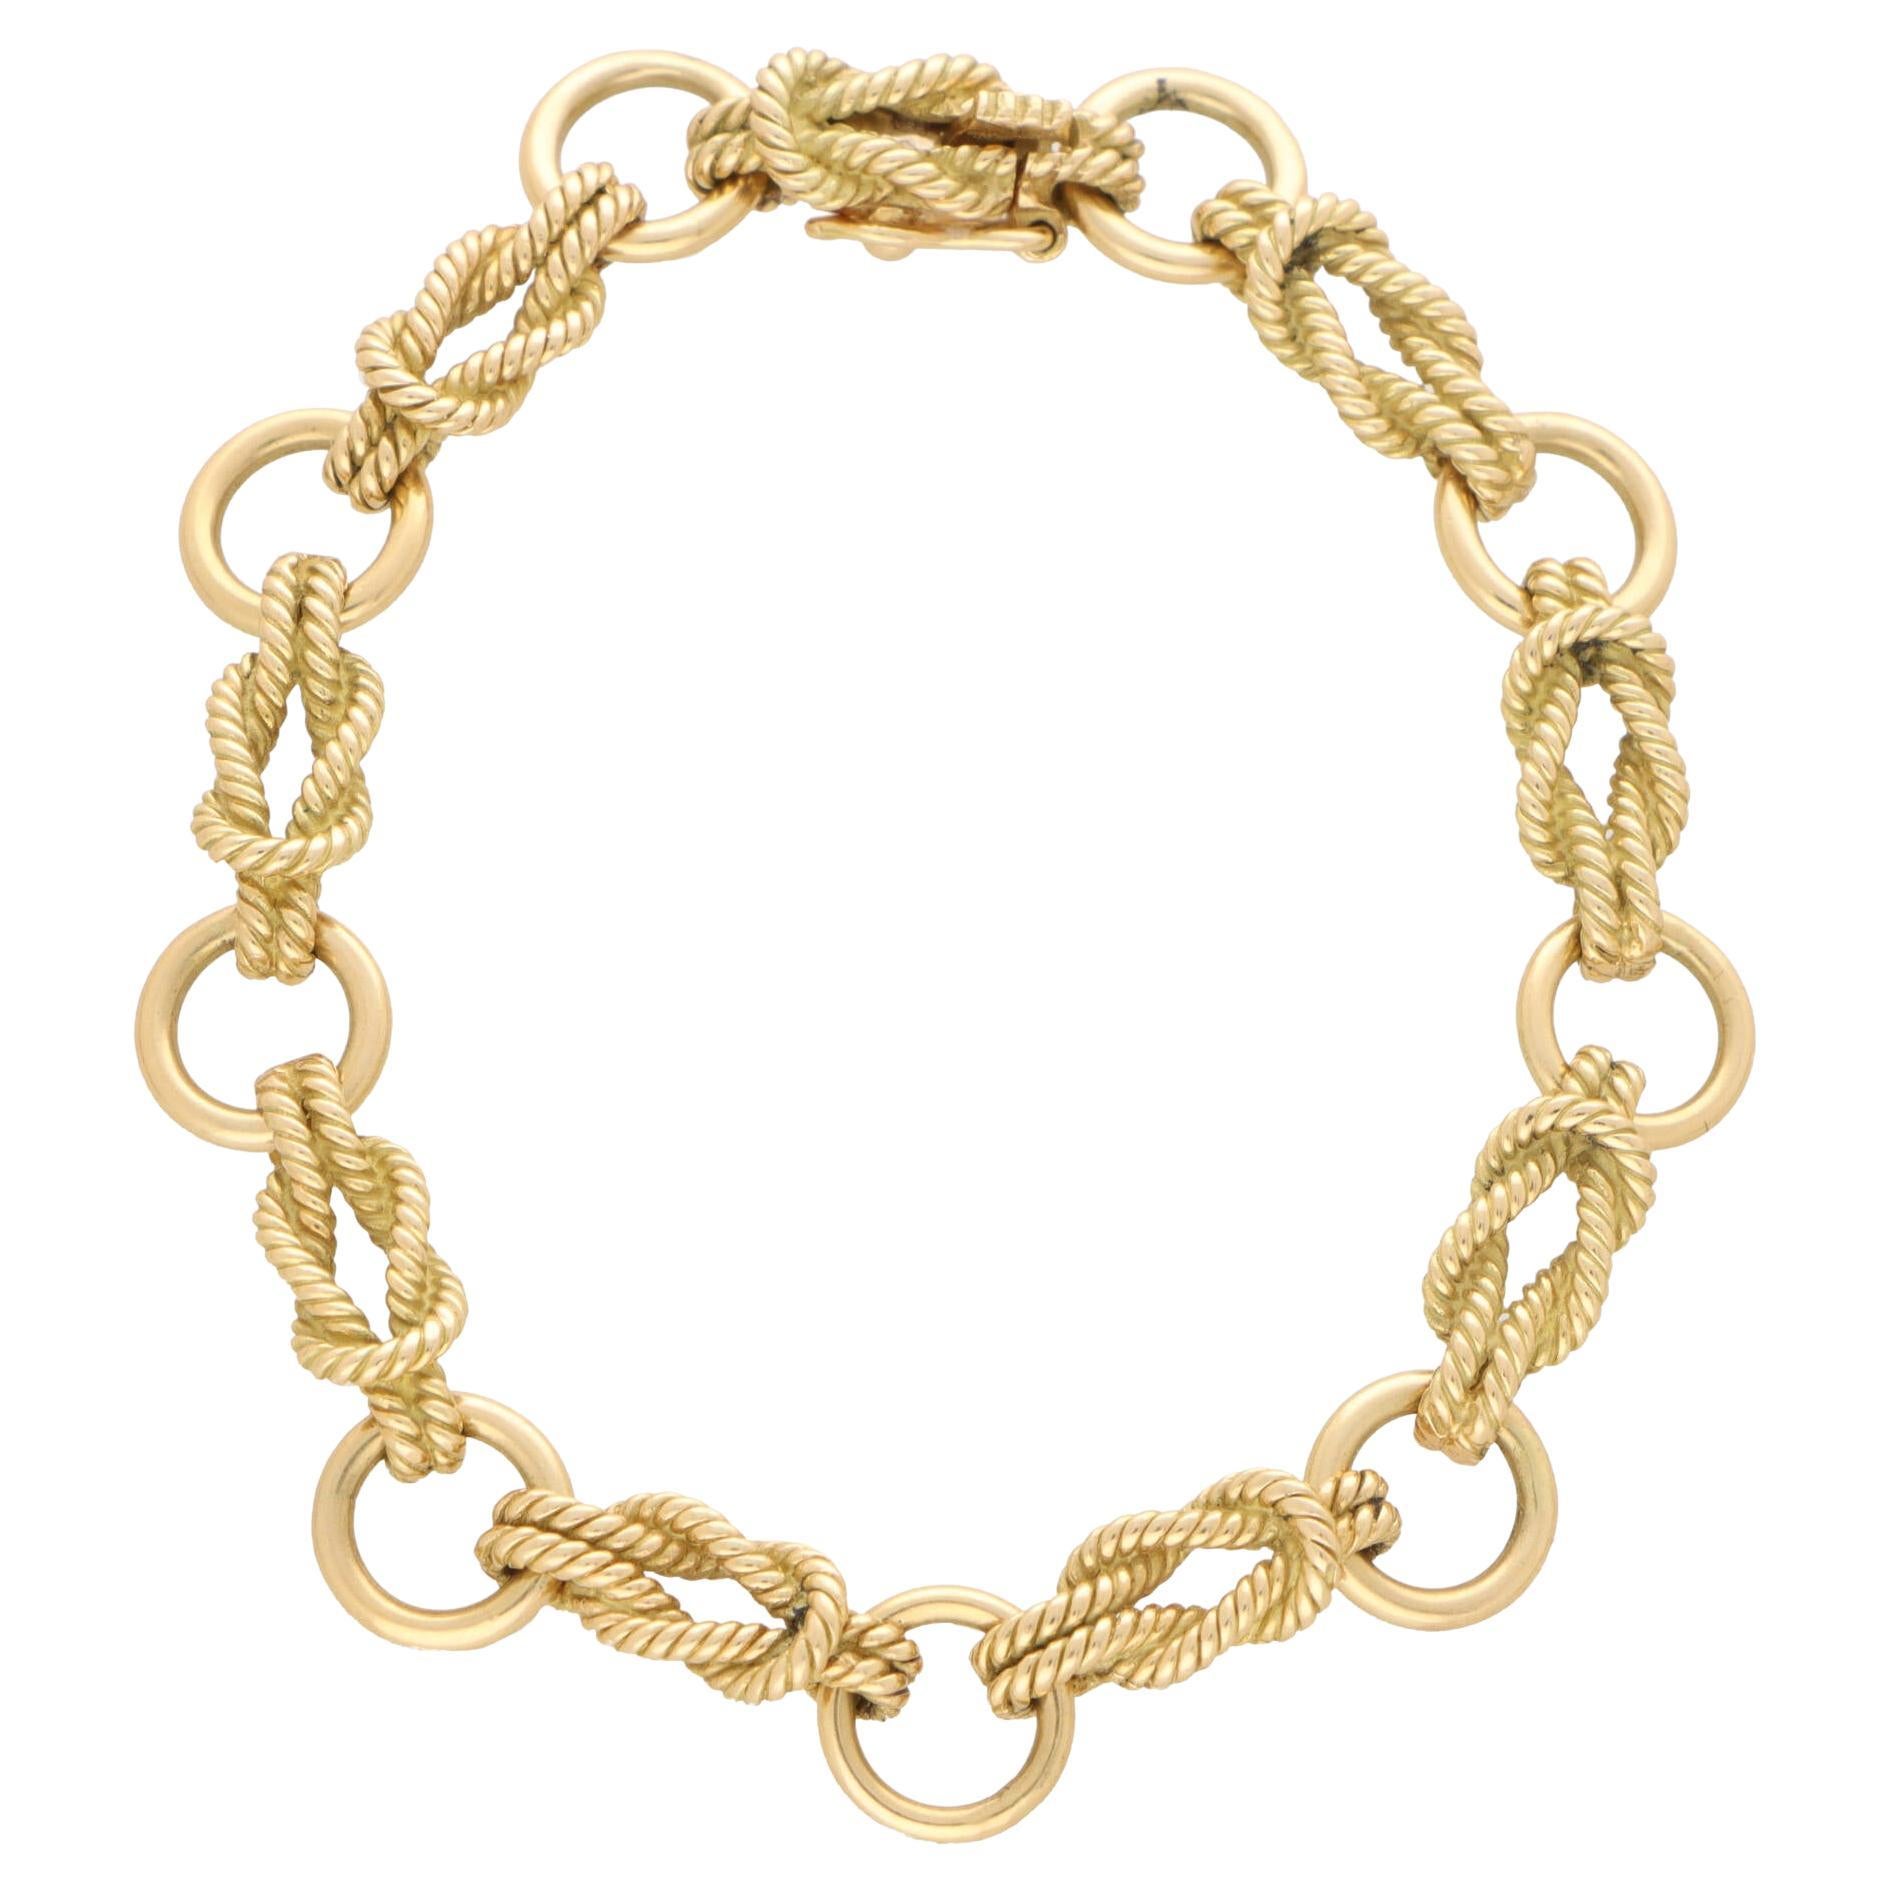 Vintage Hermès Knot Link Bracelet Set in 18k Yellow Gold